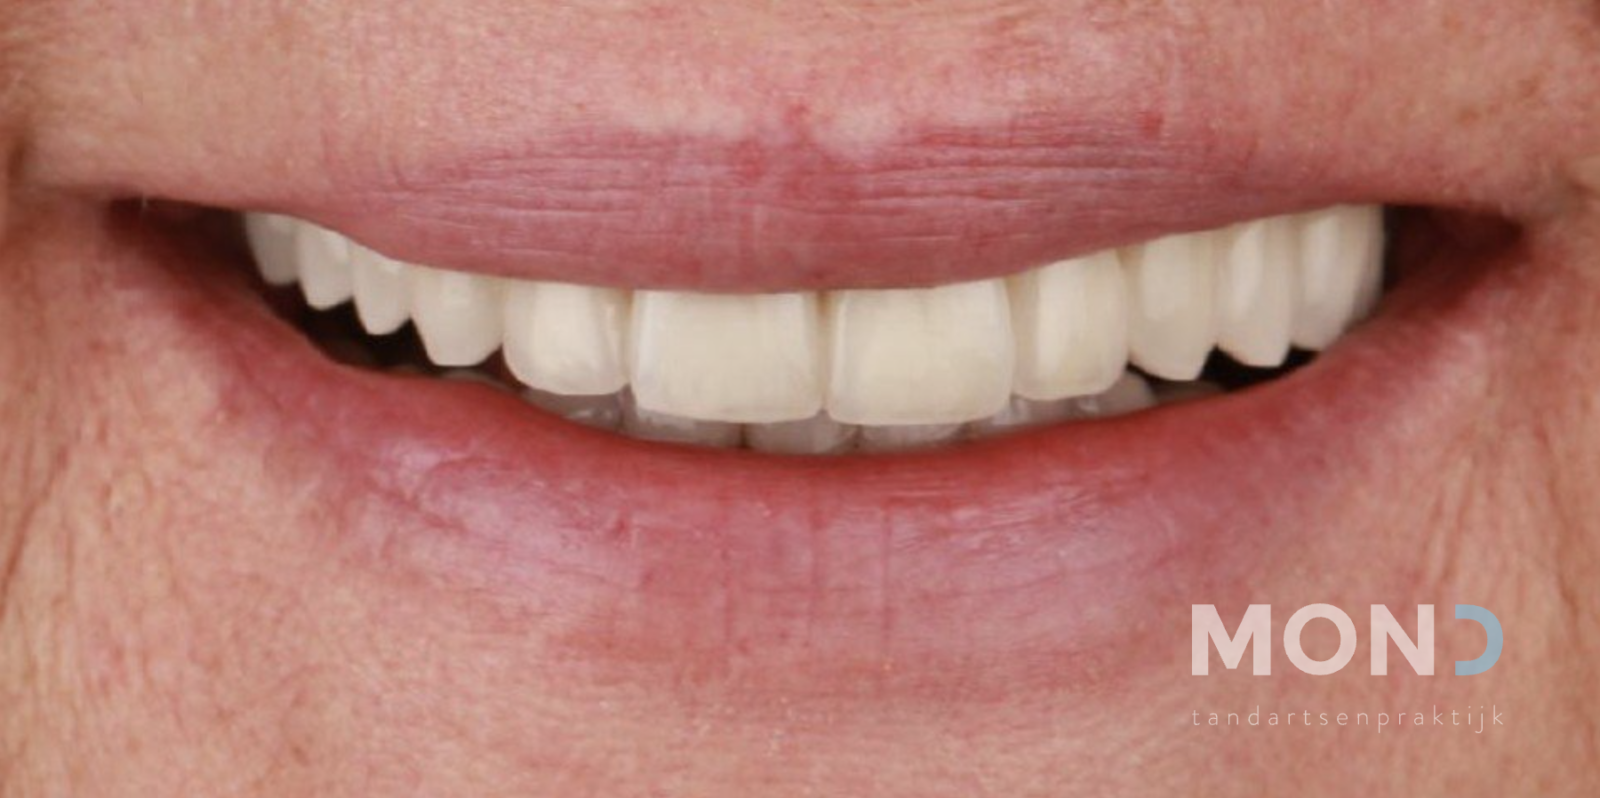 Ontbrekende tanden aanvullen met facings en kronen